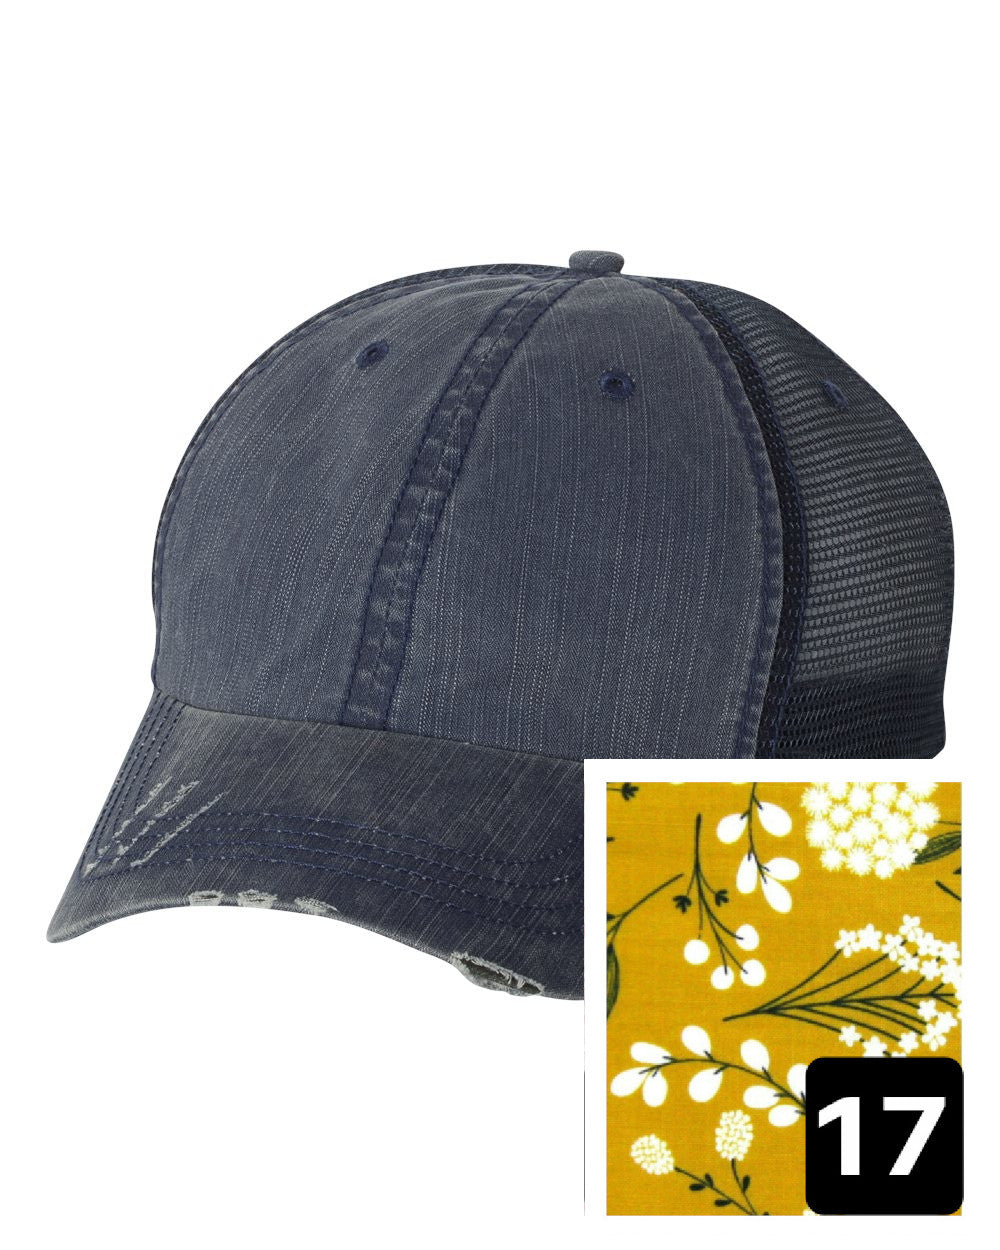 Idaho Hat | Navy Distressed Trucker Cap | Many Fabric Choices